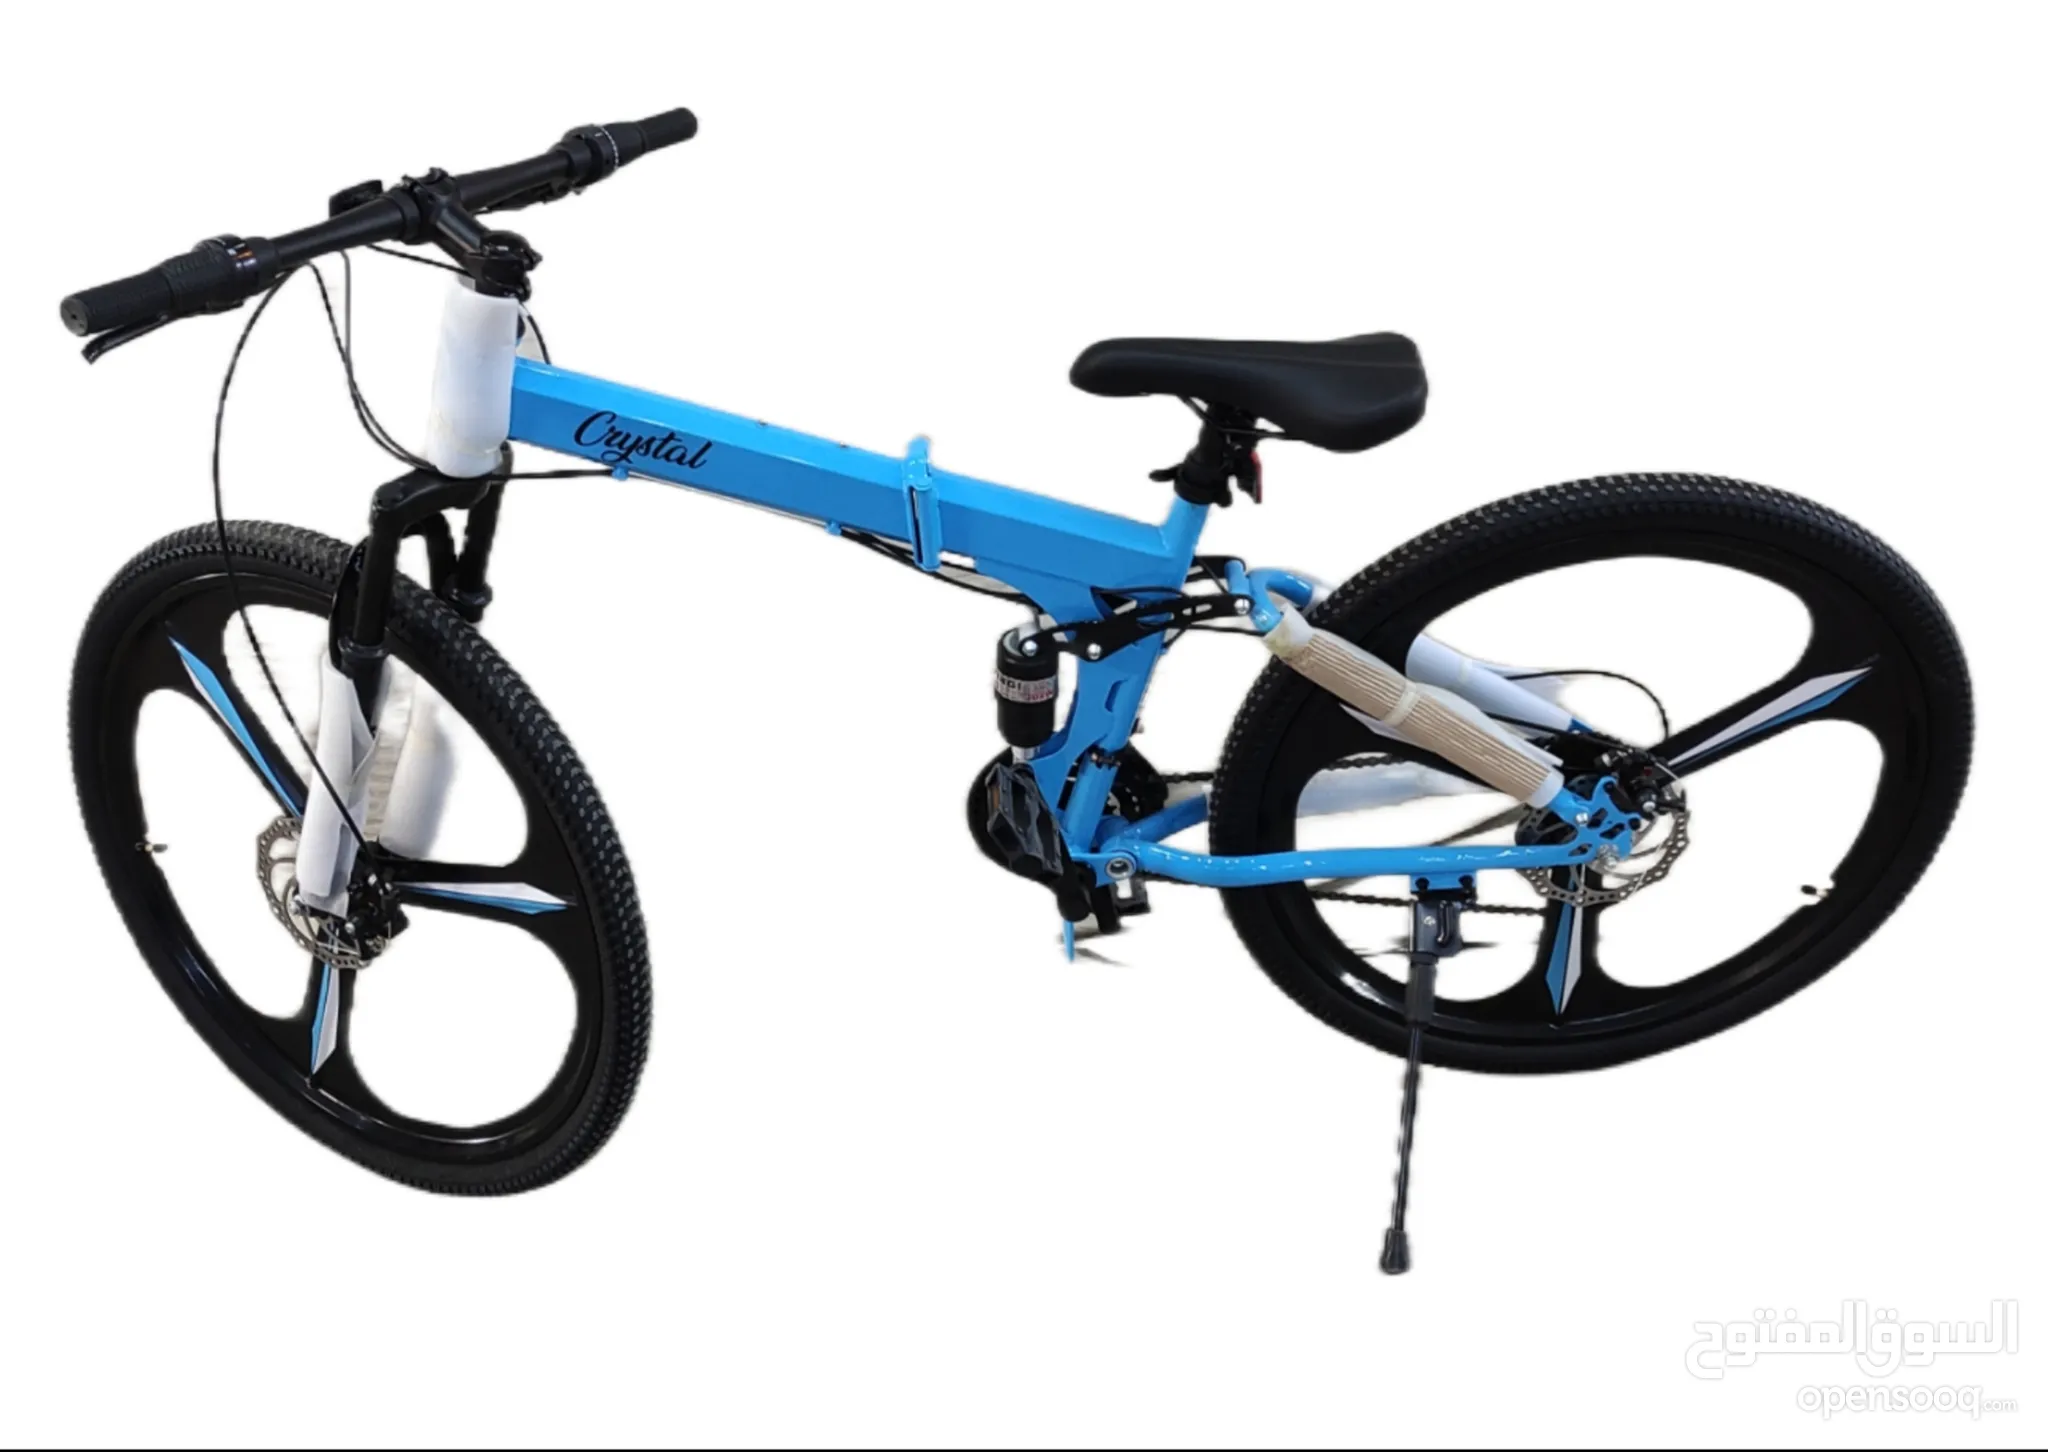 دراجات هوائية للبيع : دراجات على الطرق : جبلية : للأطفال : قطع غيار  واكسسوار : ارخص الاسعار في دبي | السوق المفتوح